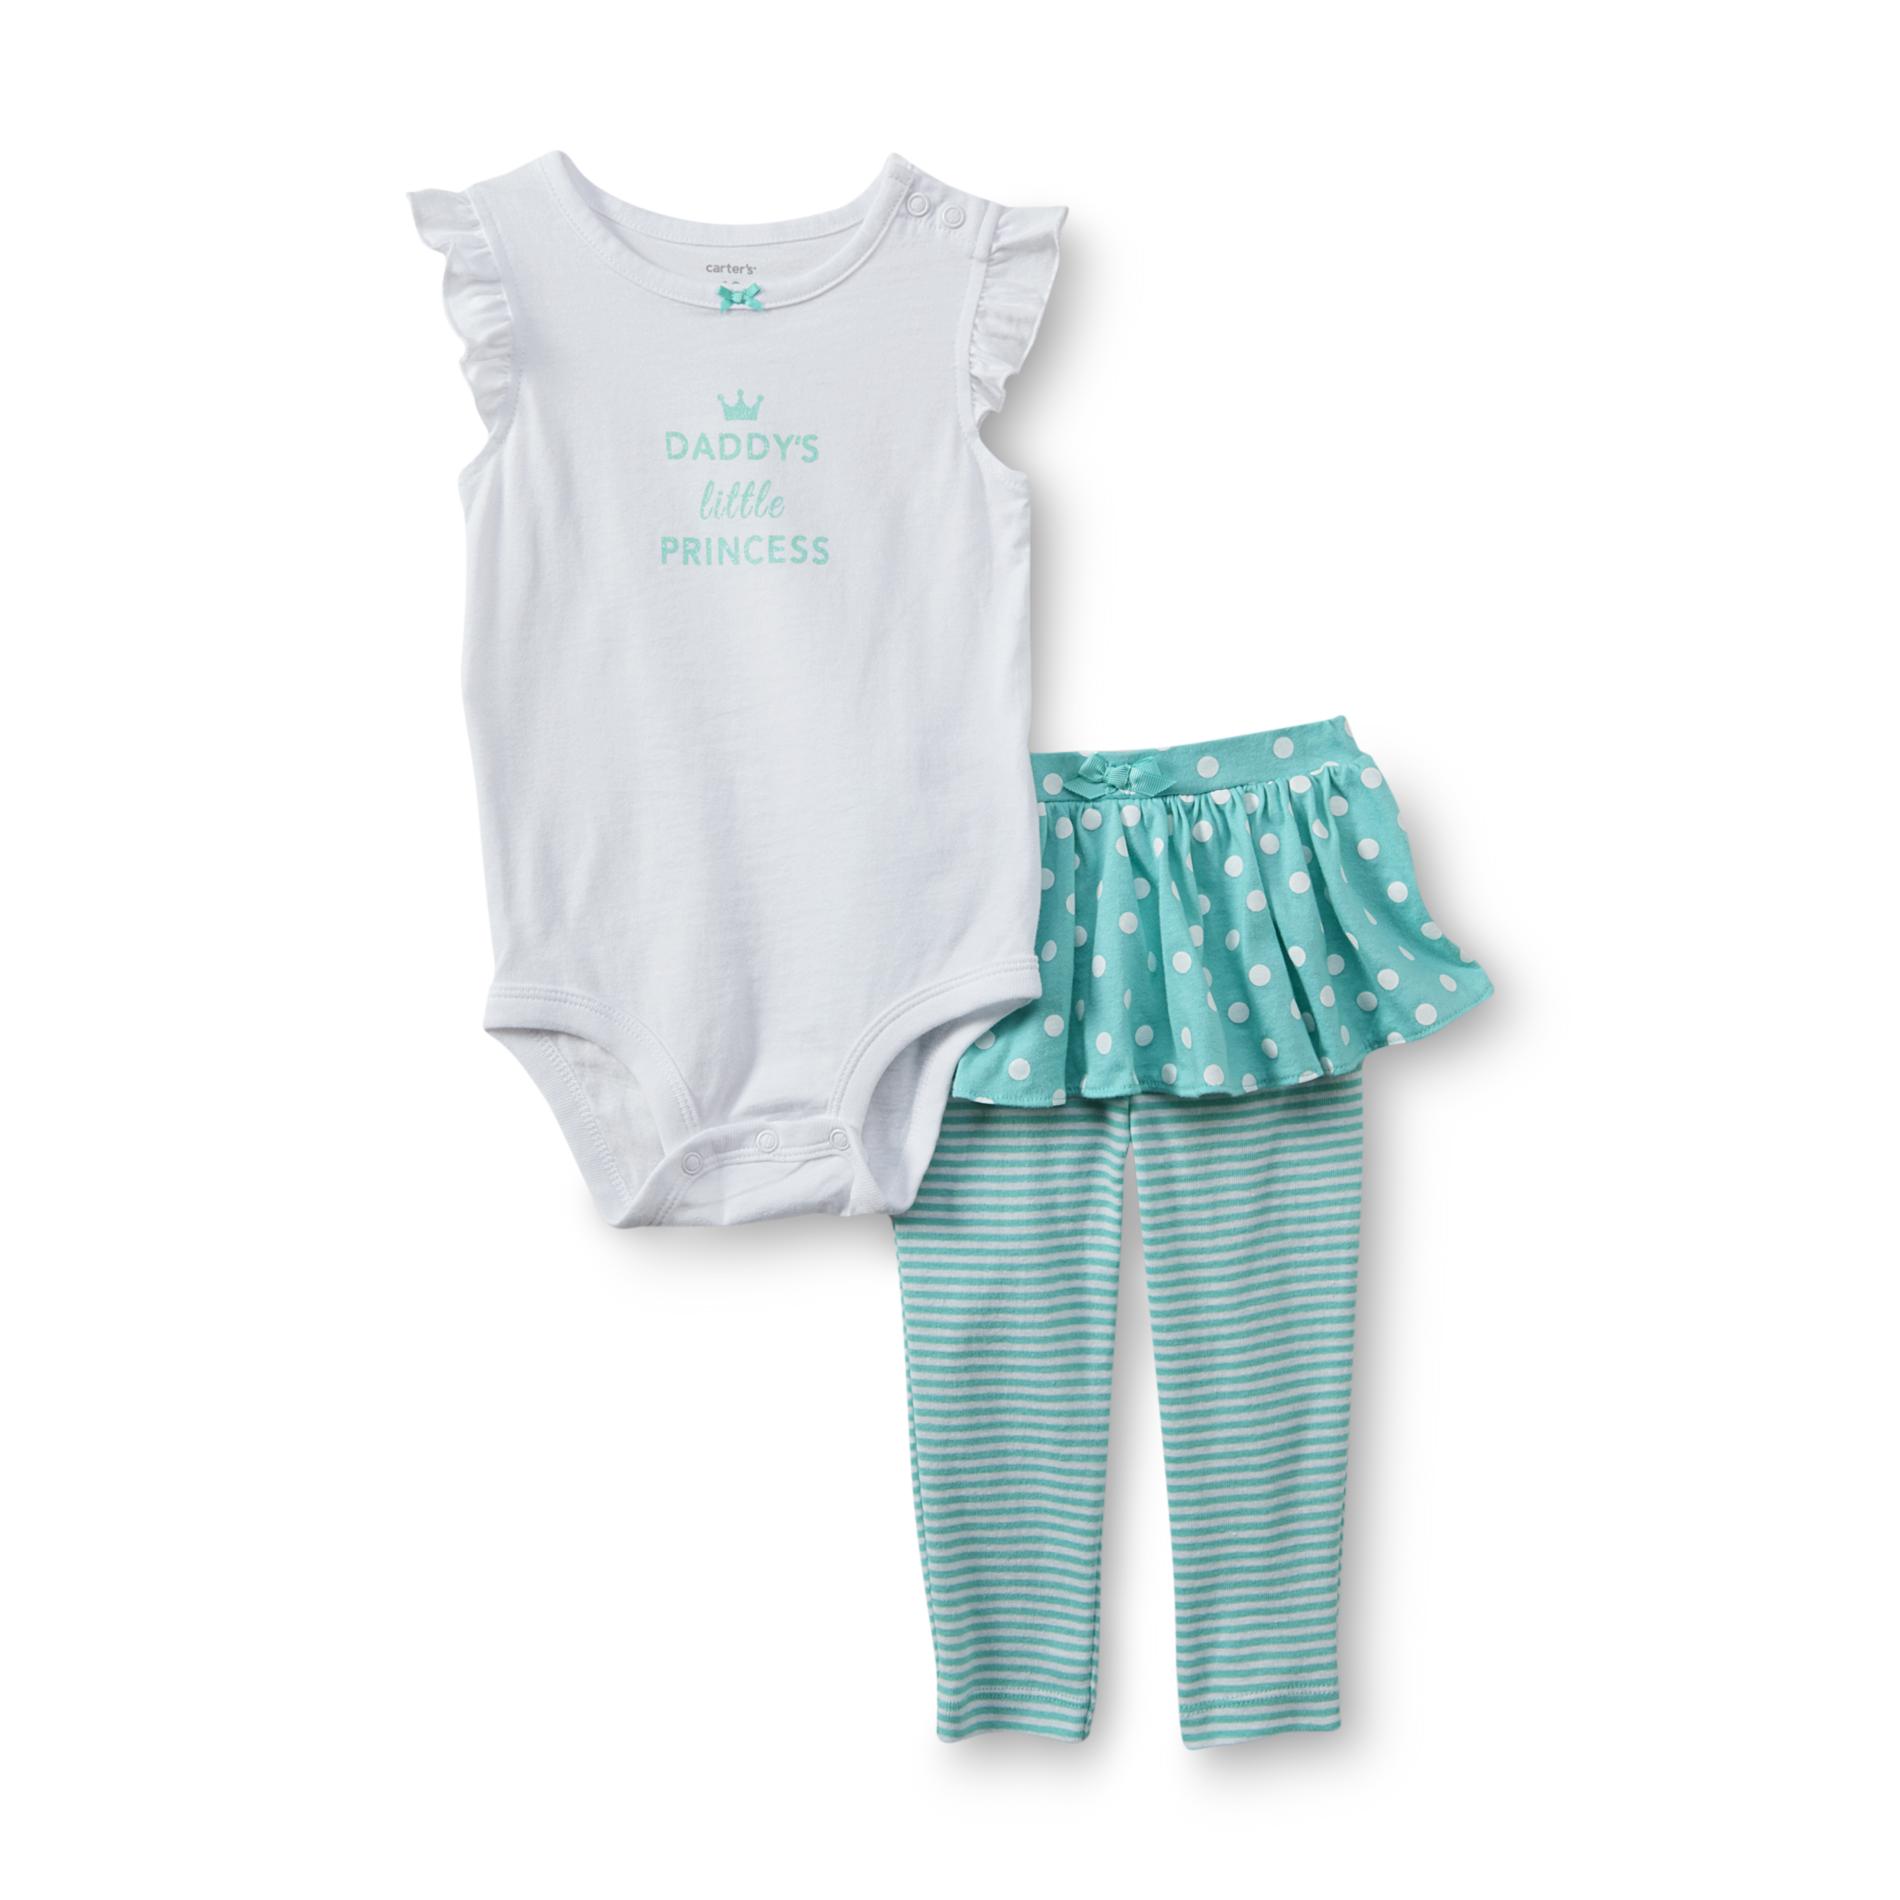 Carter's Newborn & Infant Girl's Bodysuit & Skeggings - Daddy's Little Princess